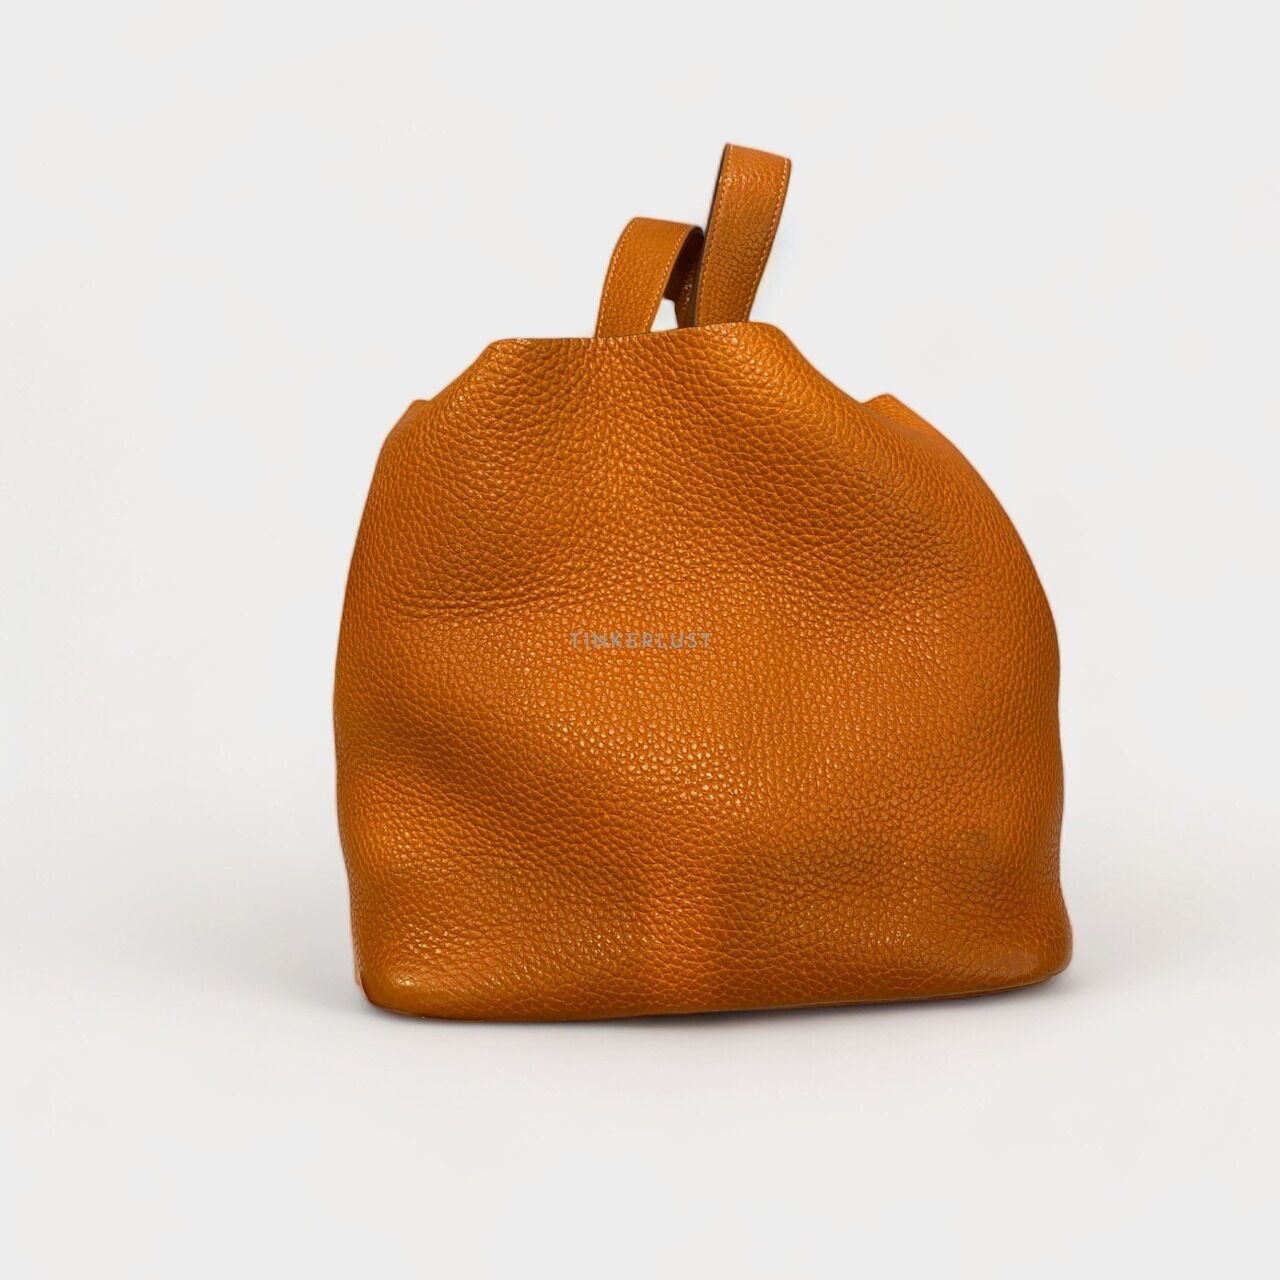 Hermes Picotin 22 Orange Clem PHW #H 2004 Handbag